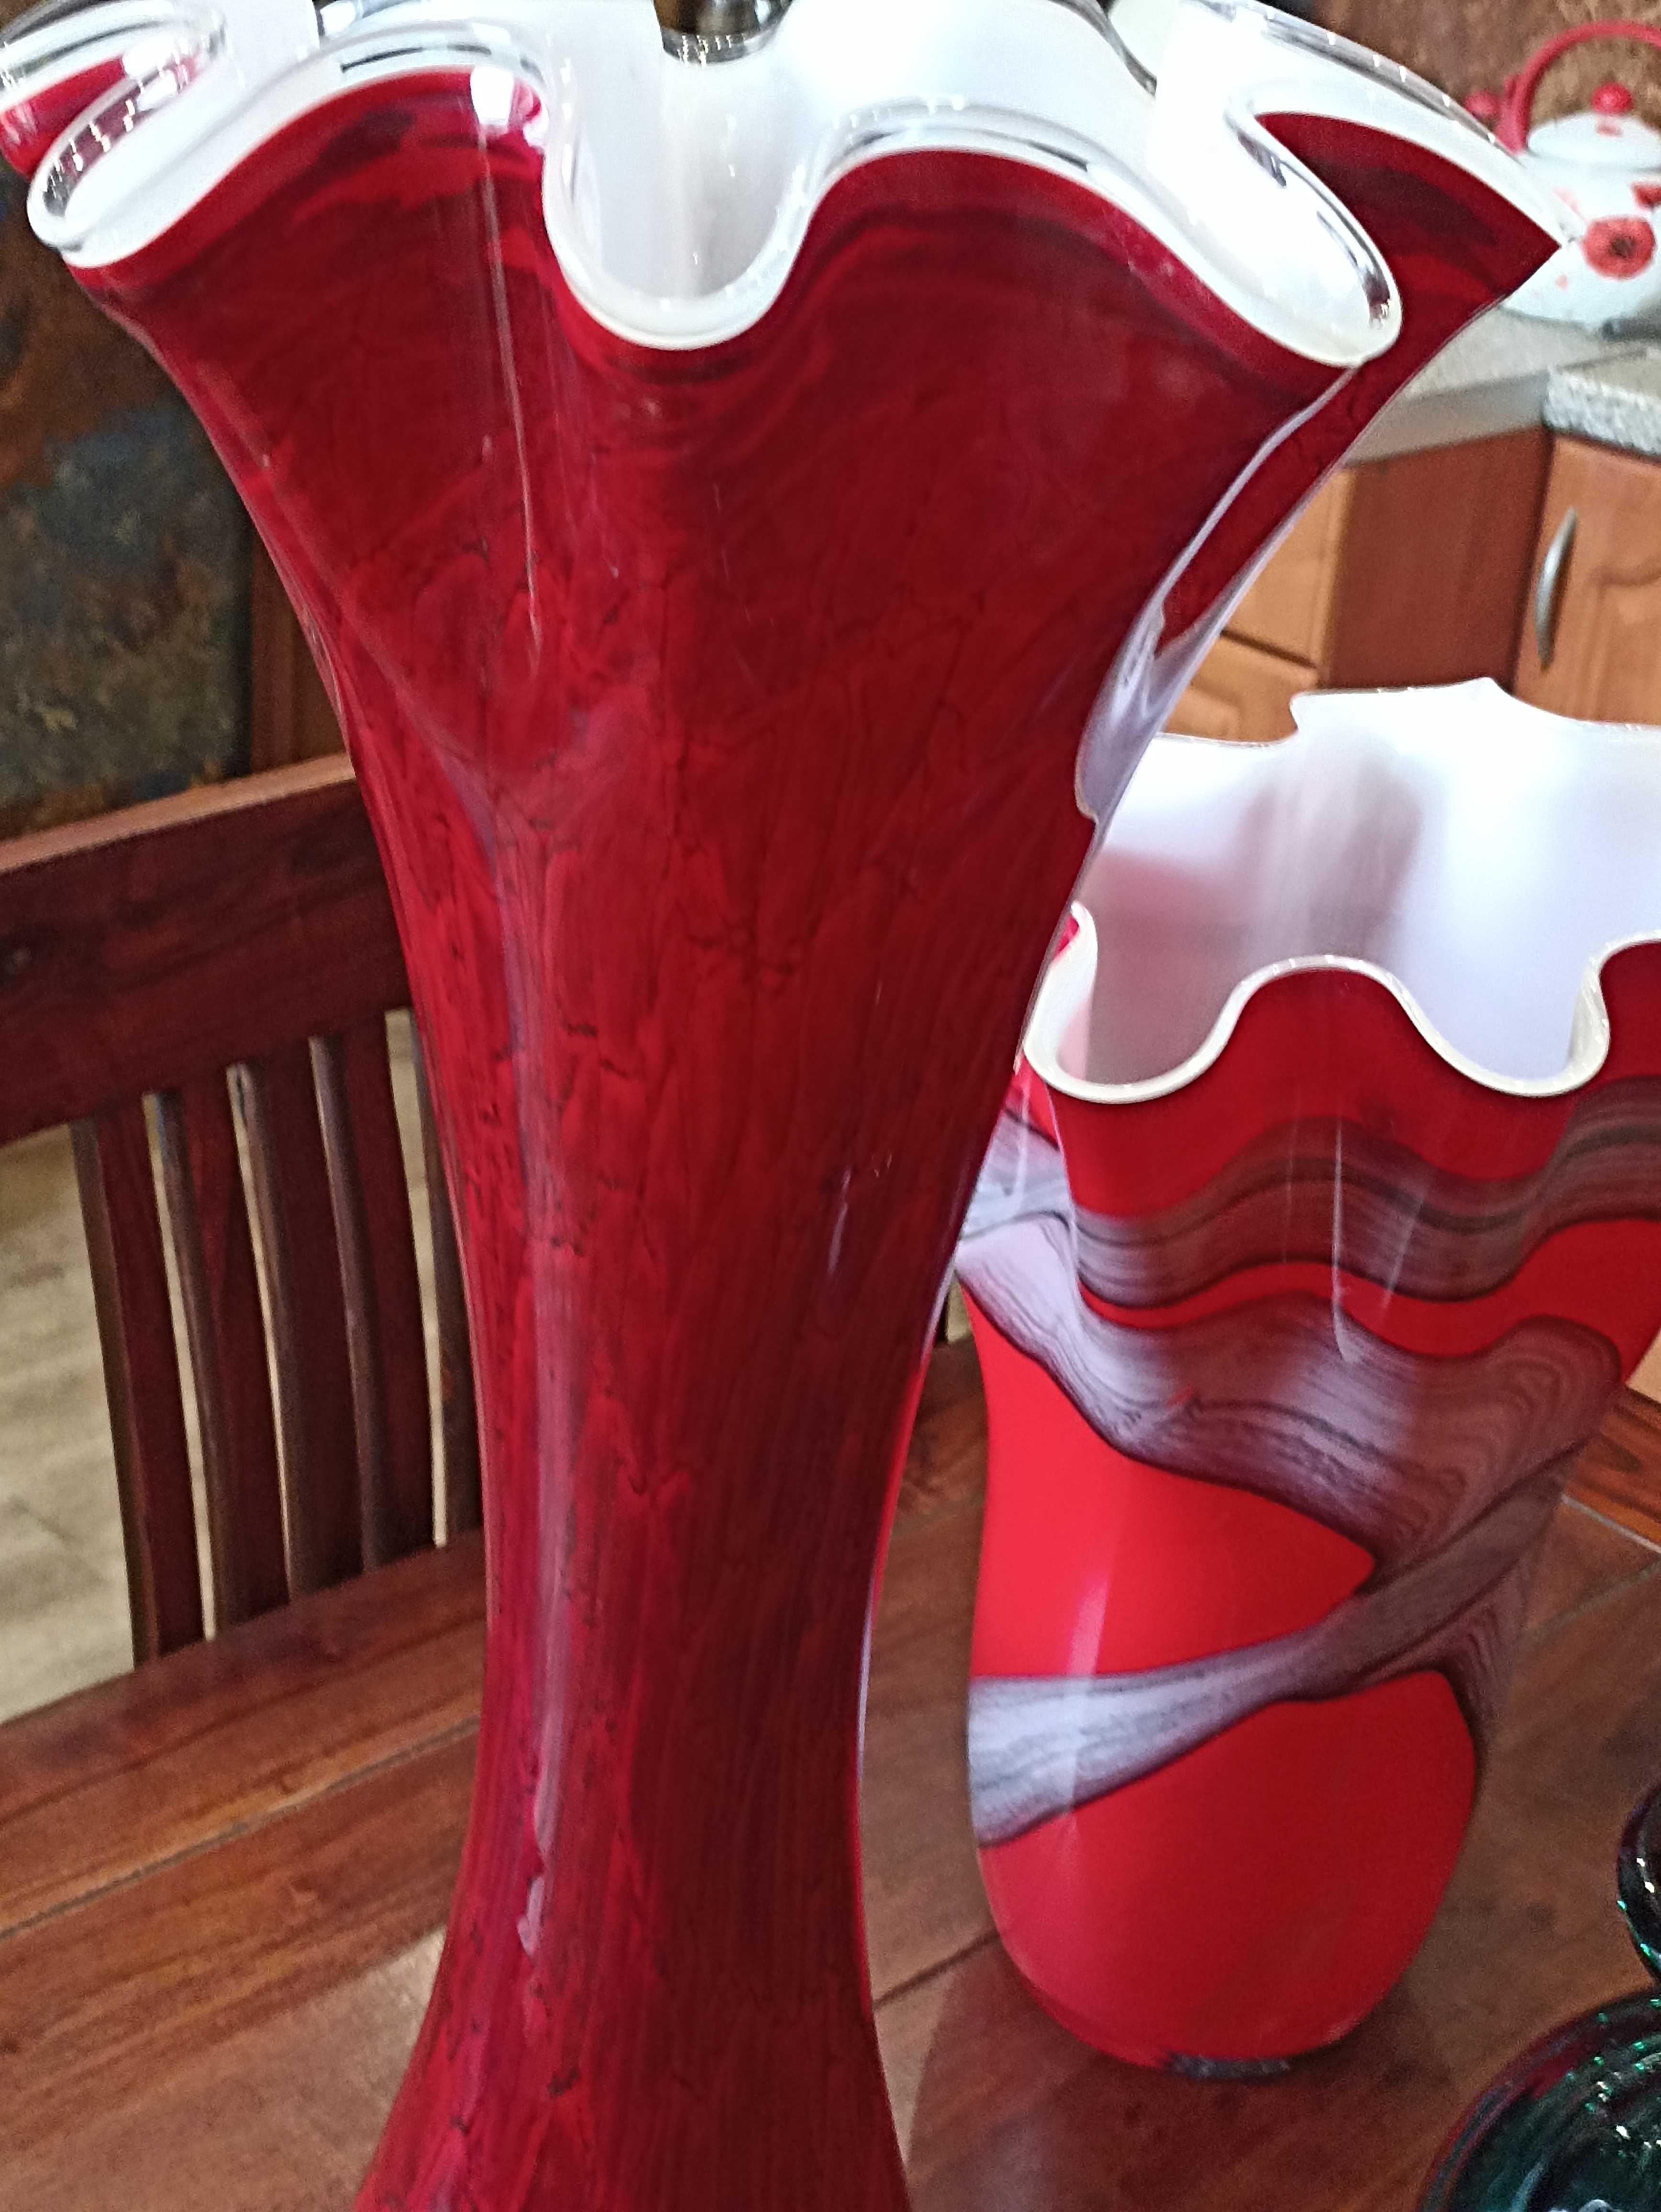 wielokolorowe szklo wazony cena za sztuke wazon  czerwony szklo murano